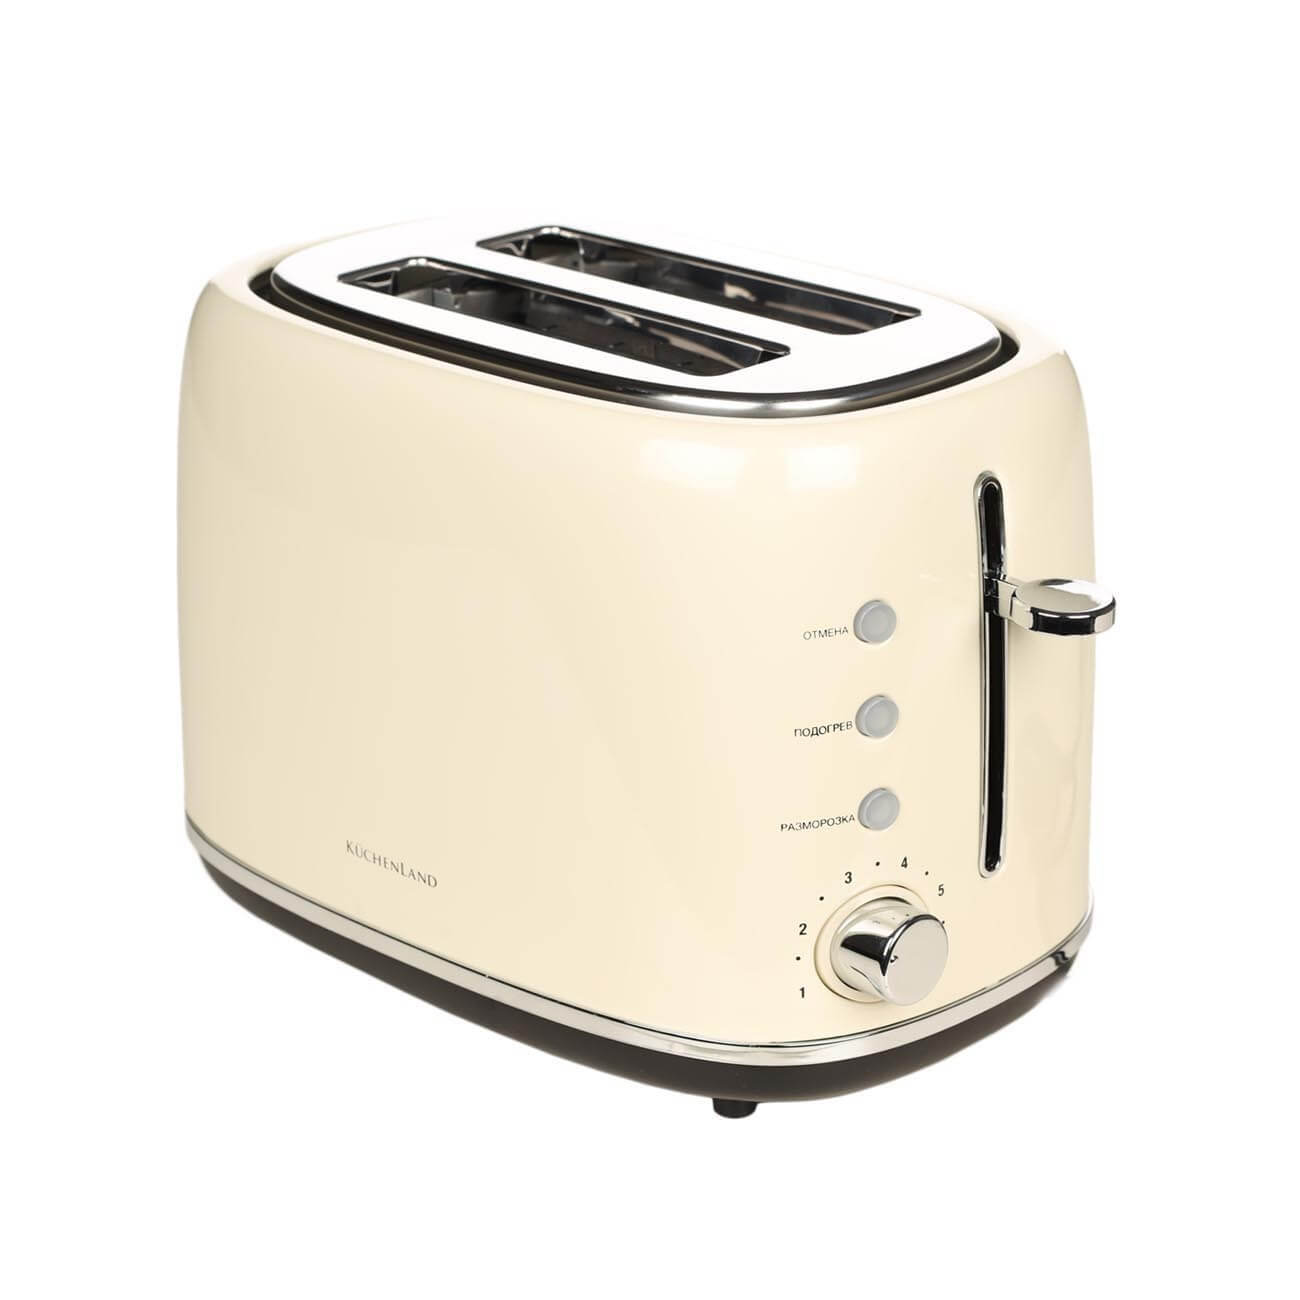 Тостер электрический, 730-870 Вт, 6 режимов, сталь/пластик, бежевый, Vintage kitchen изображение № 1